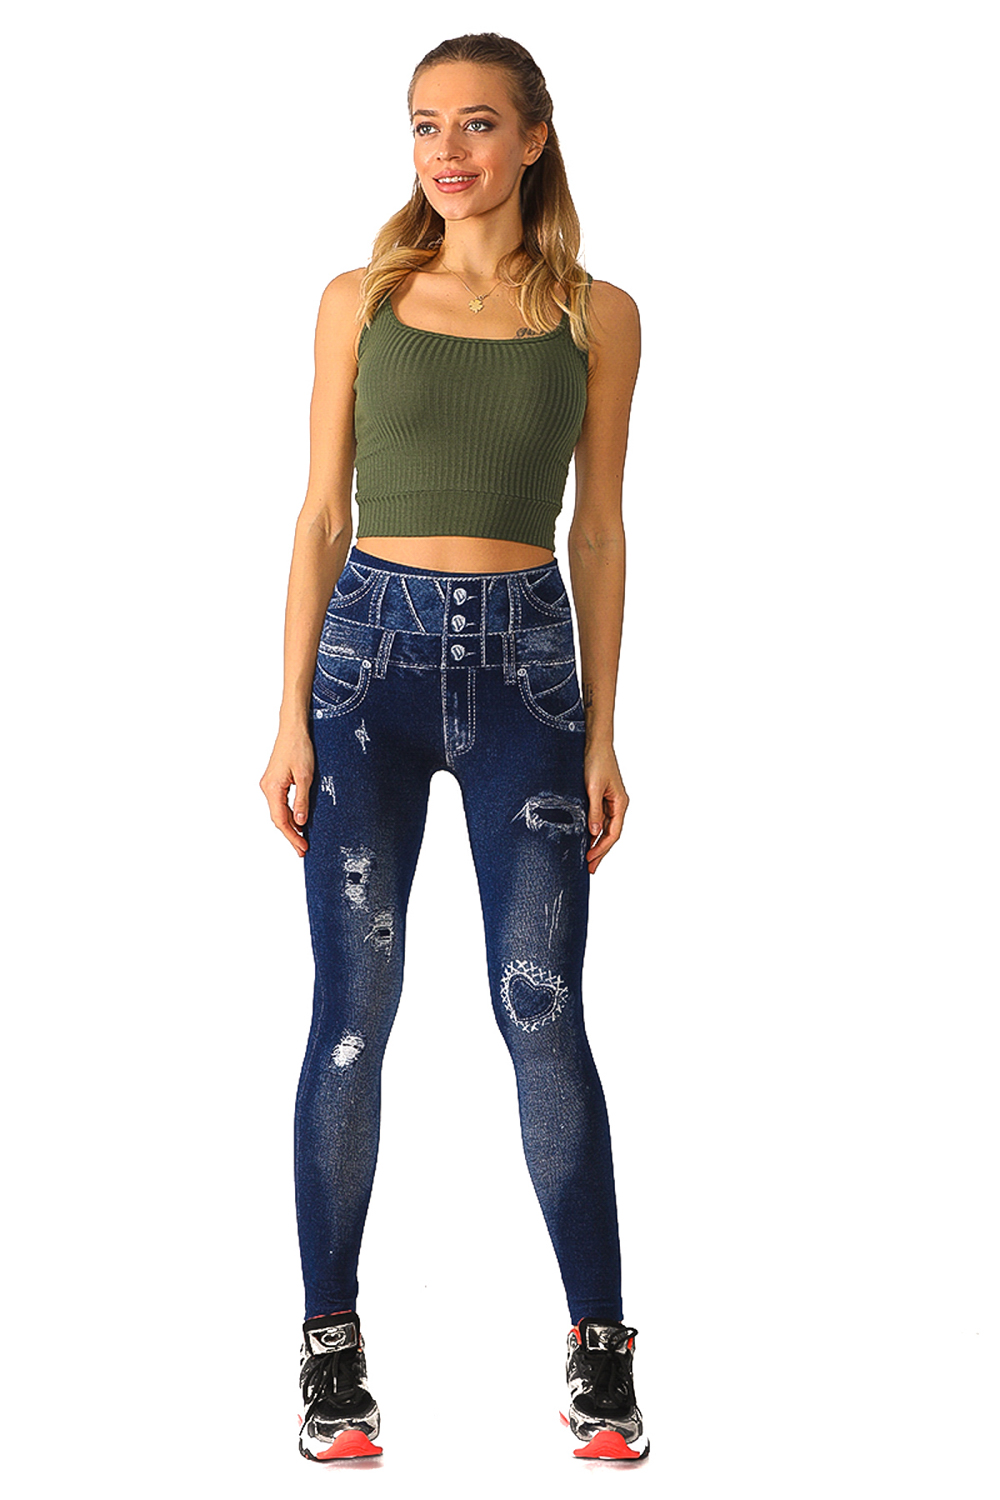 Celebrities in Designer Jeans from Denim Blog | Pretty leggings, How to  wear leggings, Best leggings